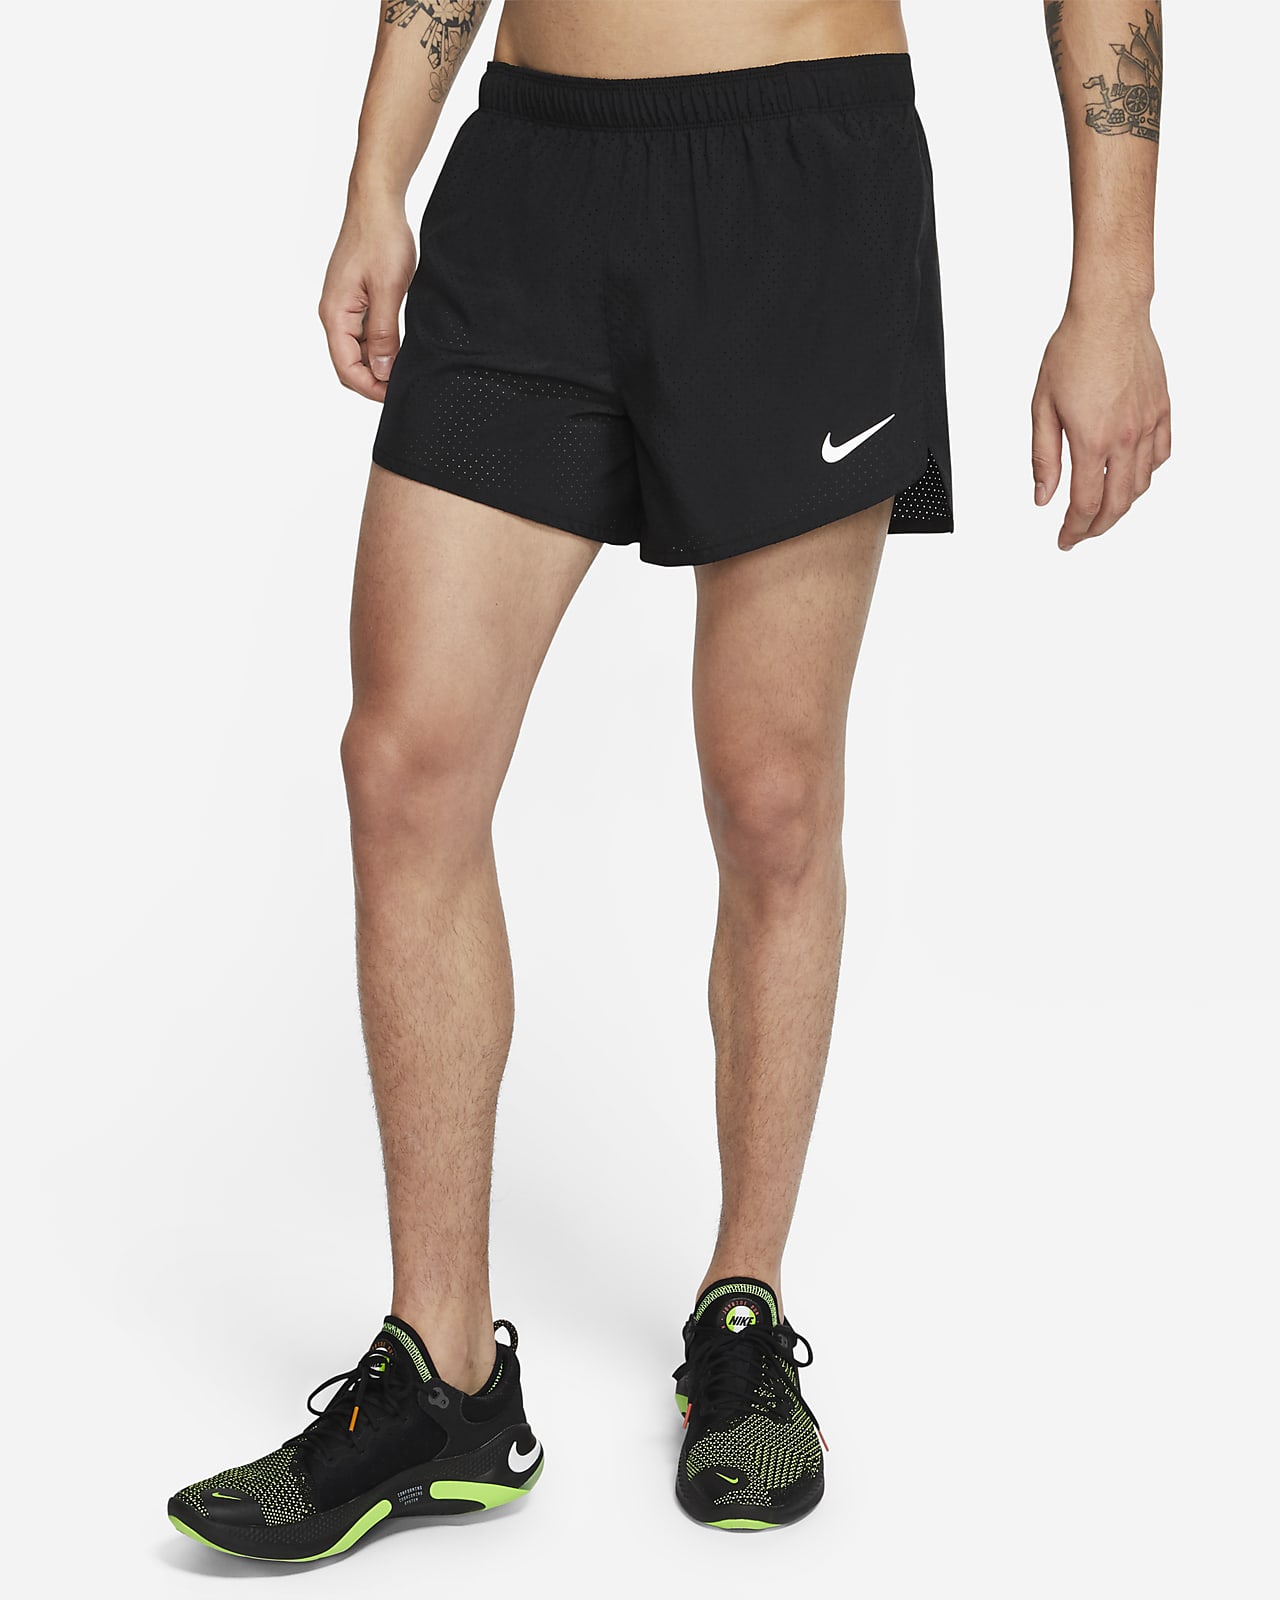 Мужские беговые шорты Nike Fast 10 см 